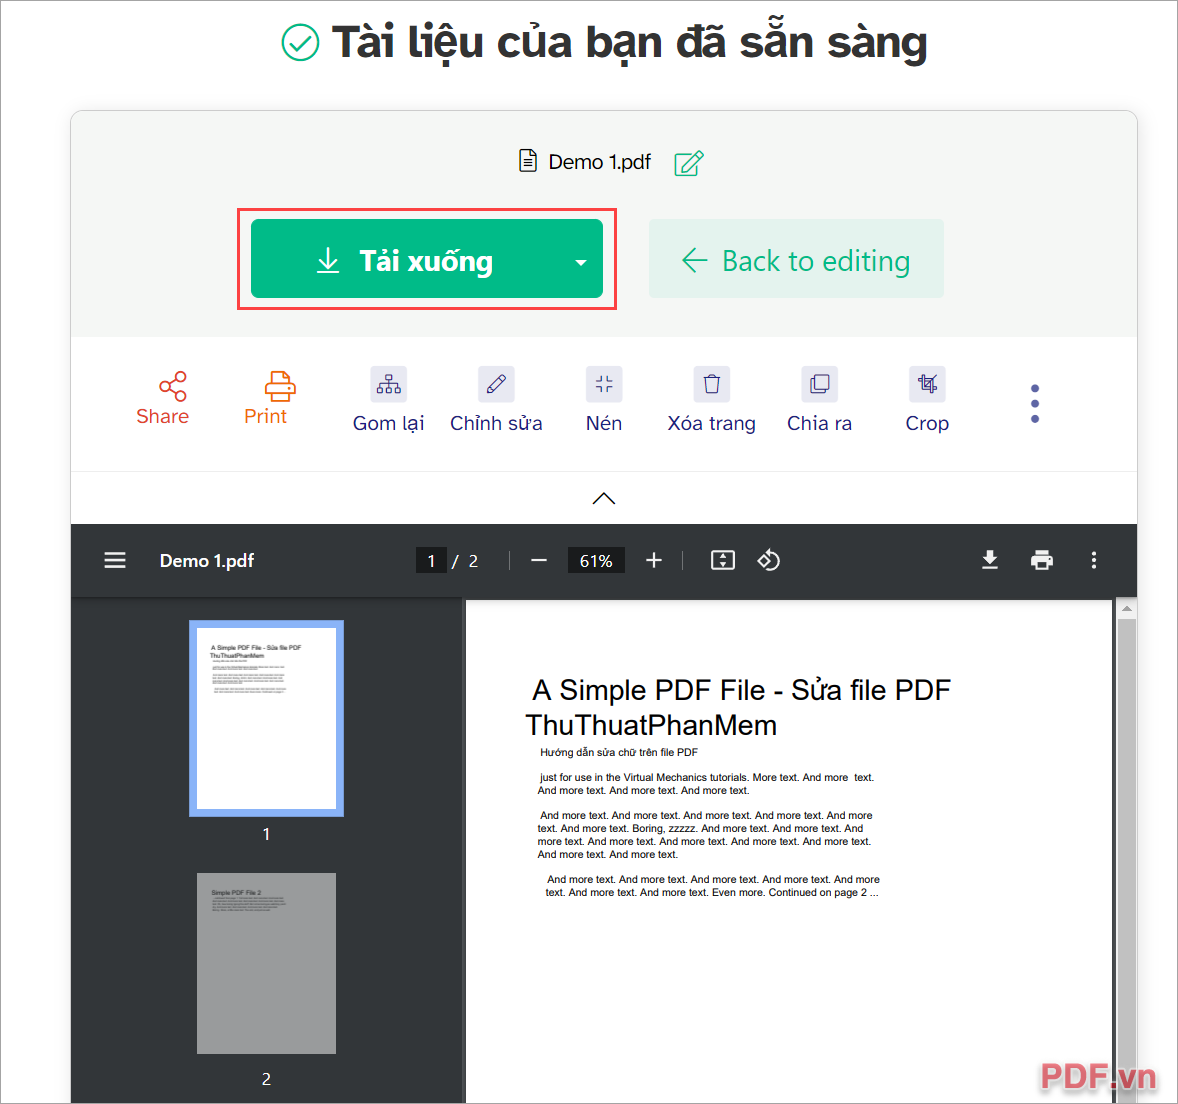 Chọn Tải xuống để lưu file PDF về máy tính